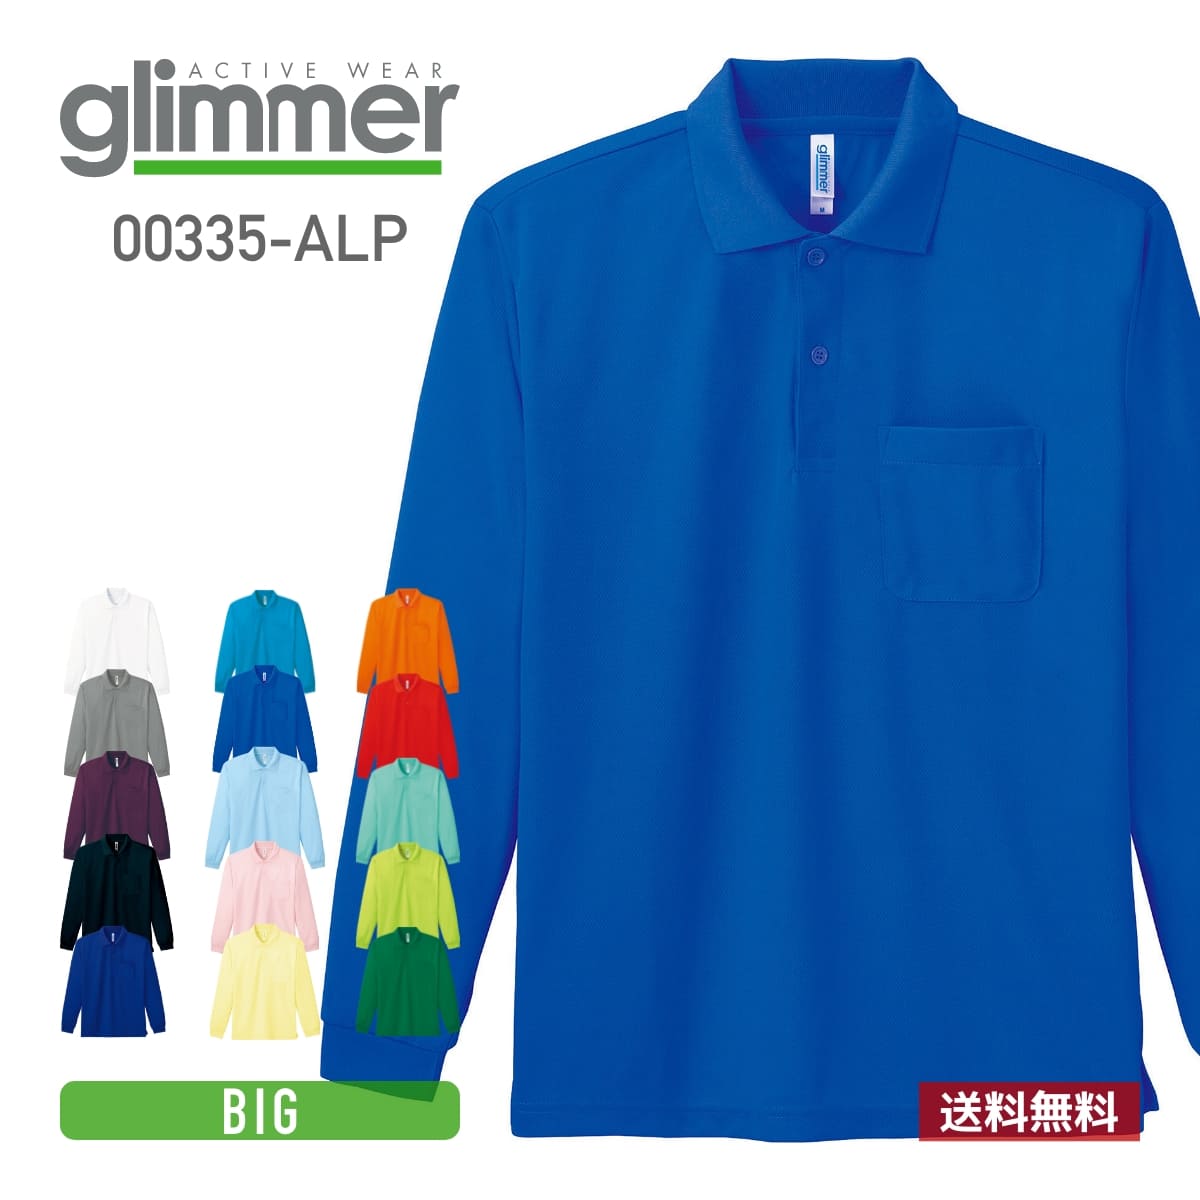 ポロシャツ メンズ 長袖 glimmer グリマー ドライ長袖 ポロシャツ ポケット付 00335-ALP 送料無料 男女兼用 ユニセッ…